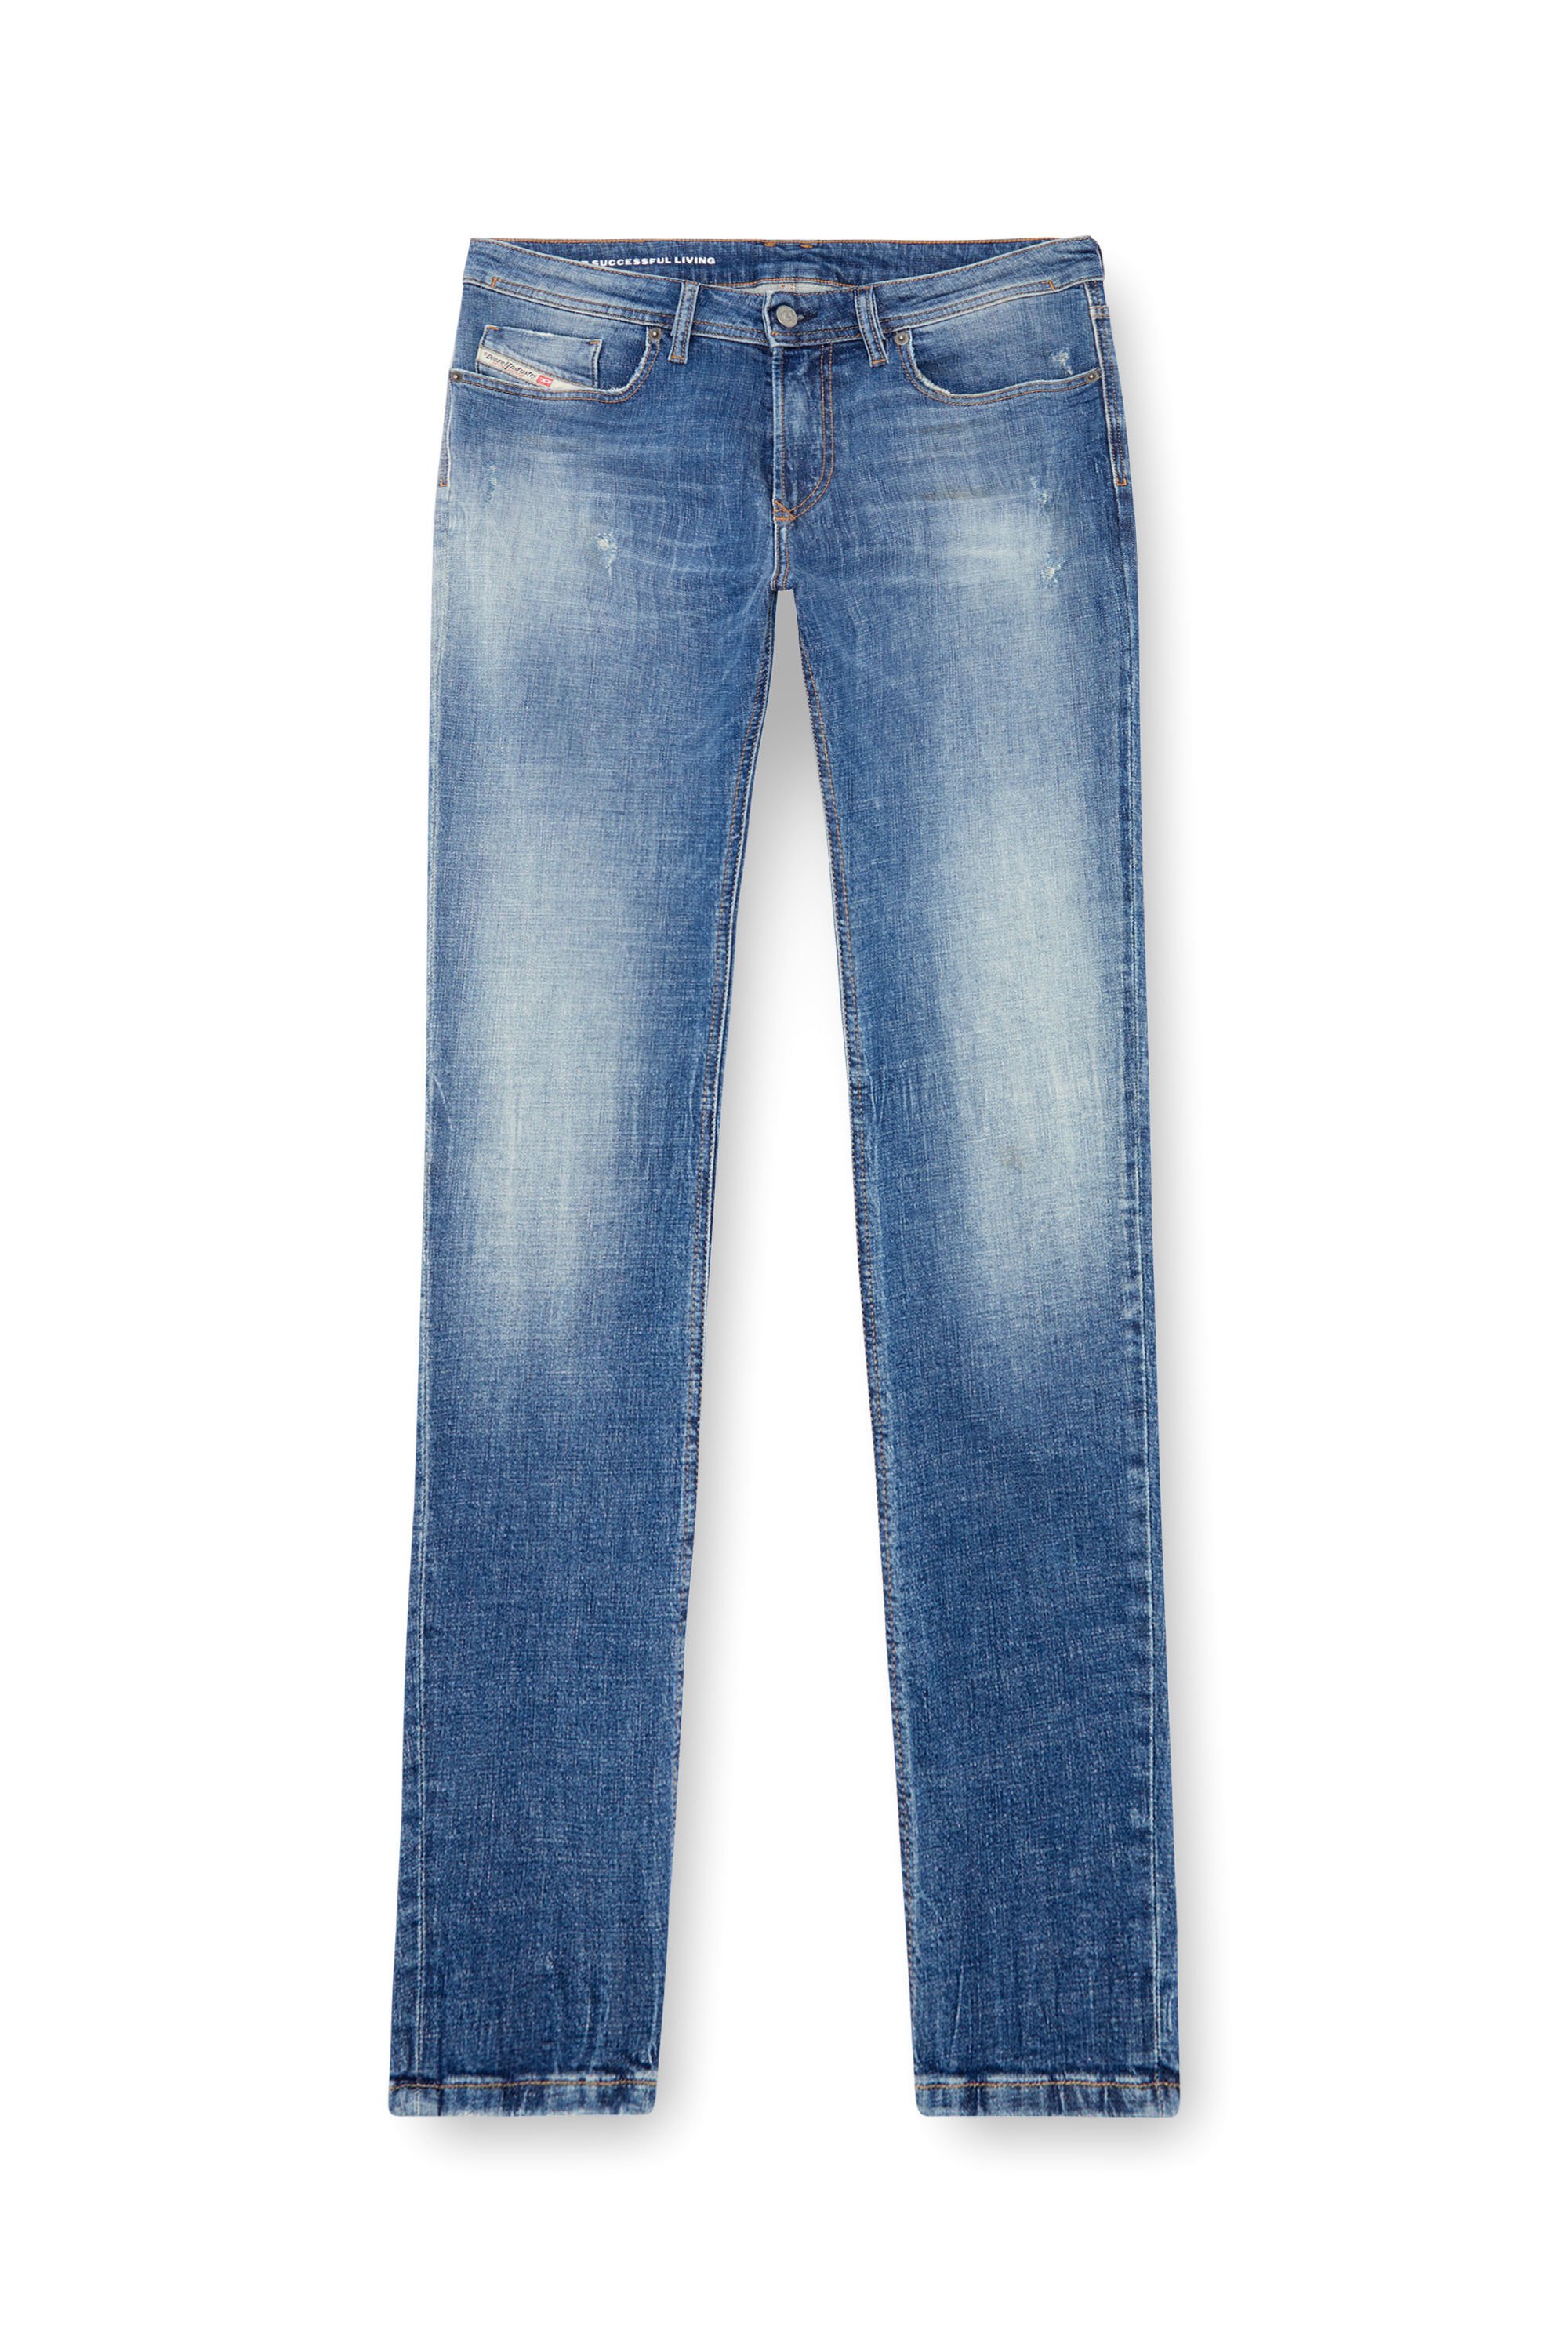 Diesel - Man Skinny Jeans 1979 Sleenker 0GRDF, Medium blue - Image 3